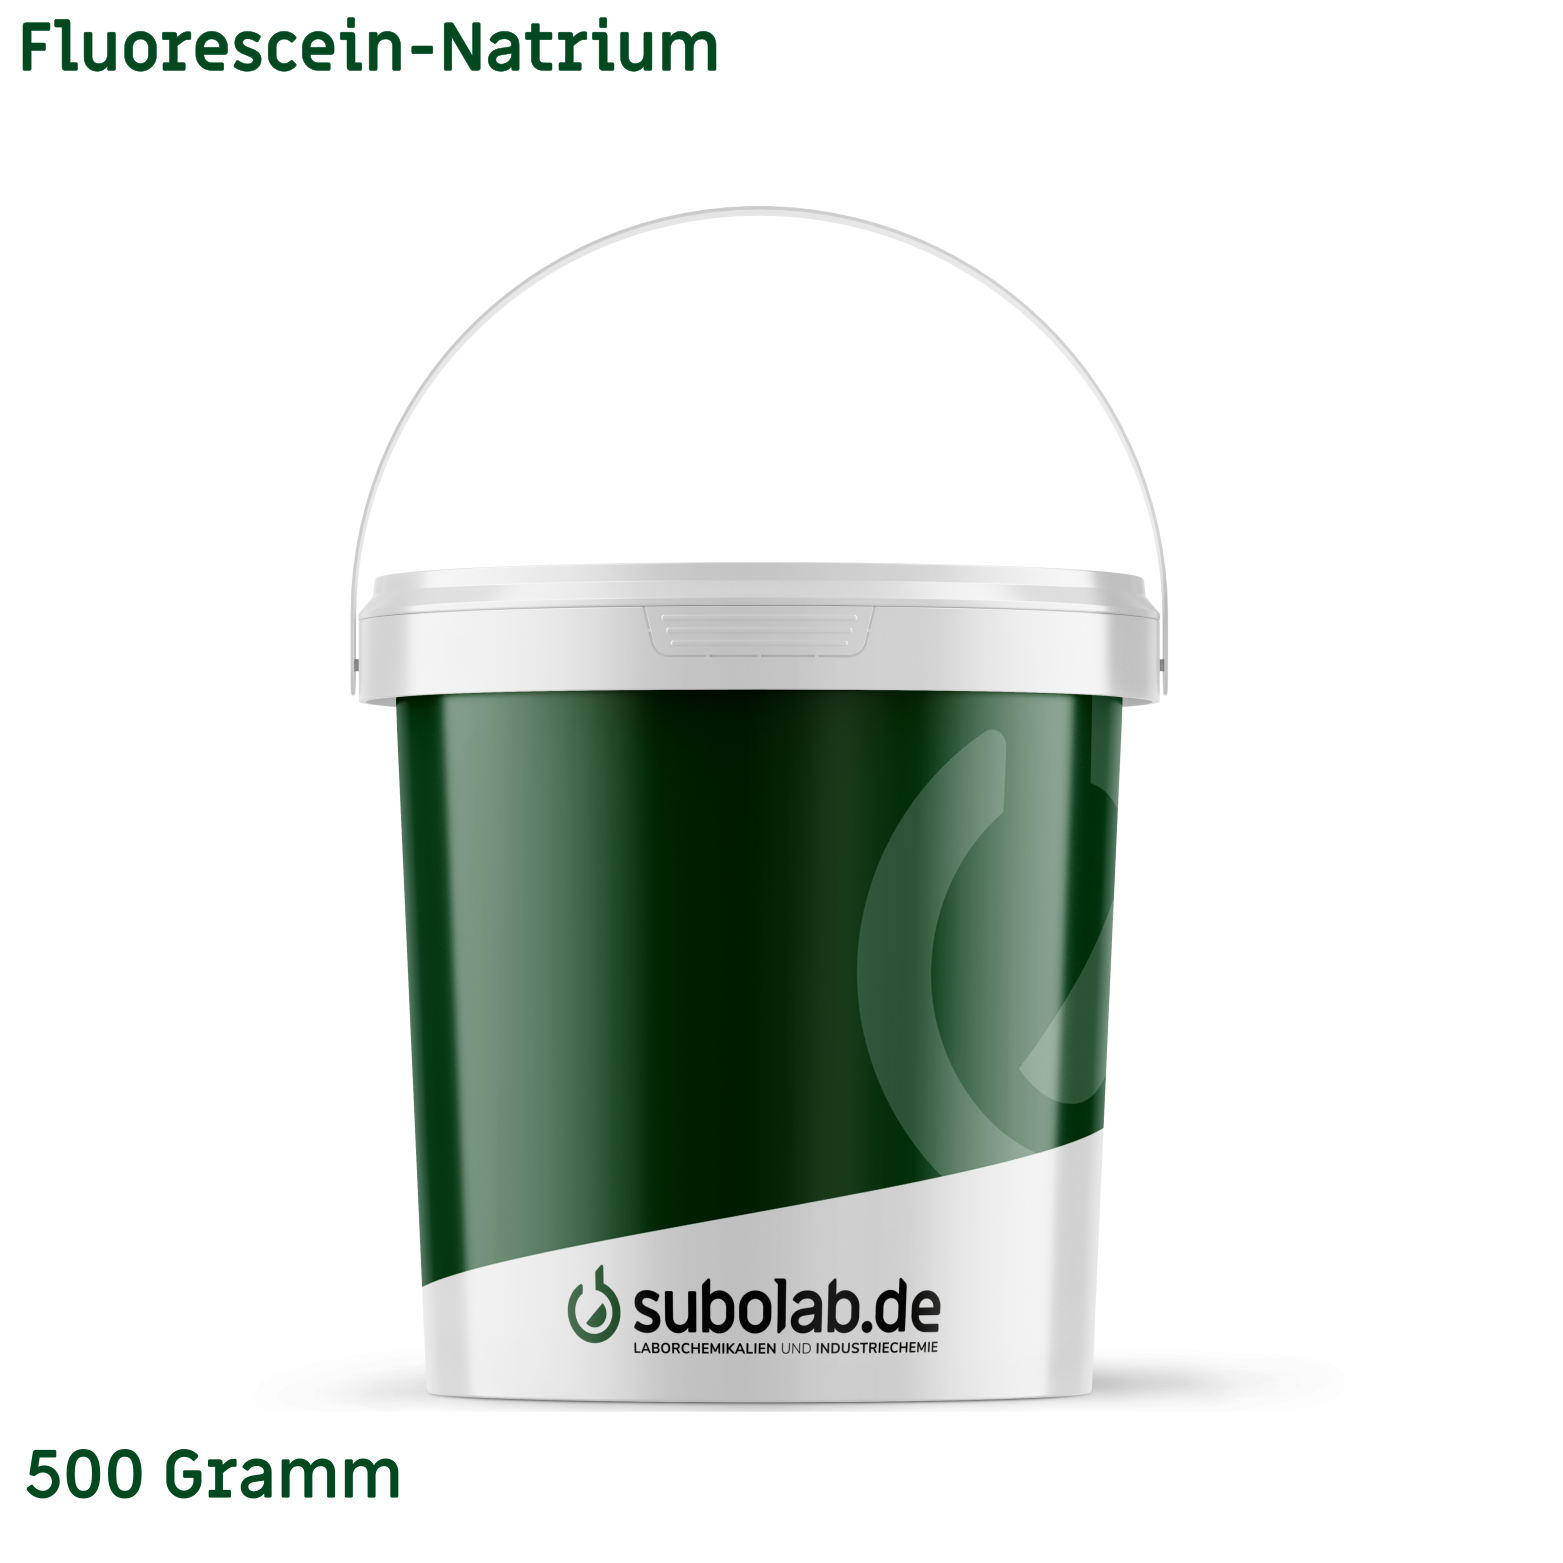 Bild von Fluorescein-Natrium (500 Gramm)